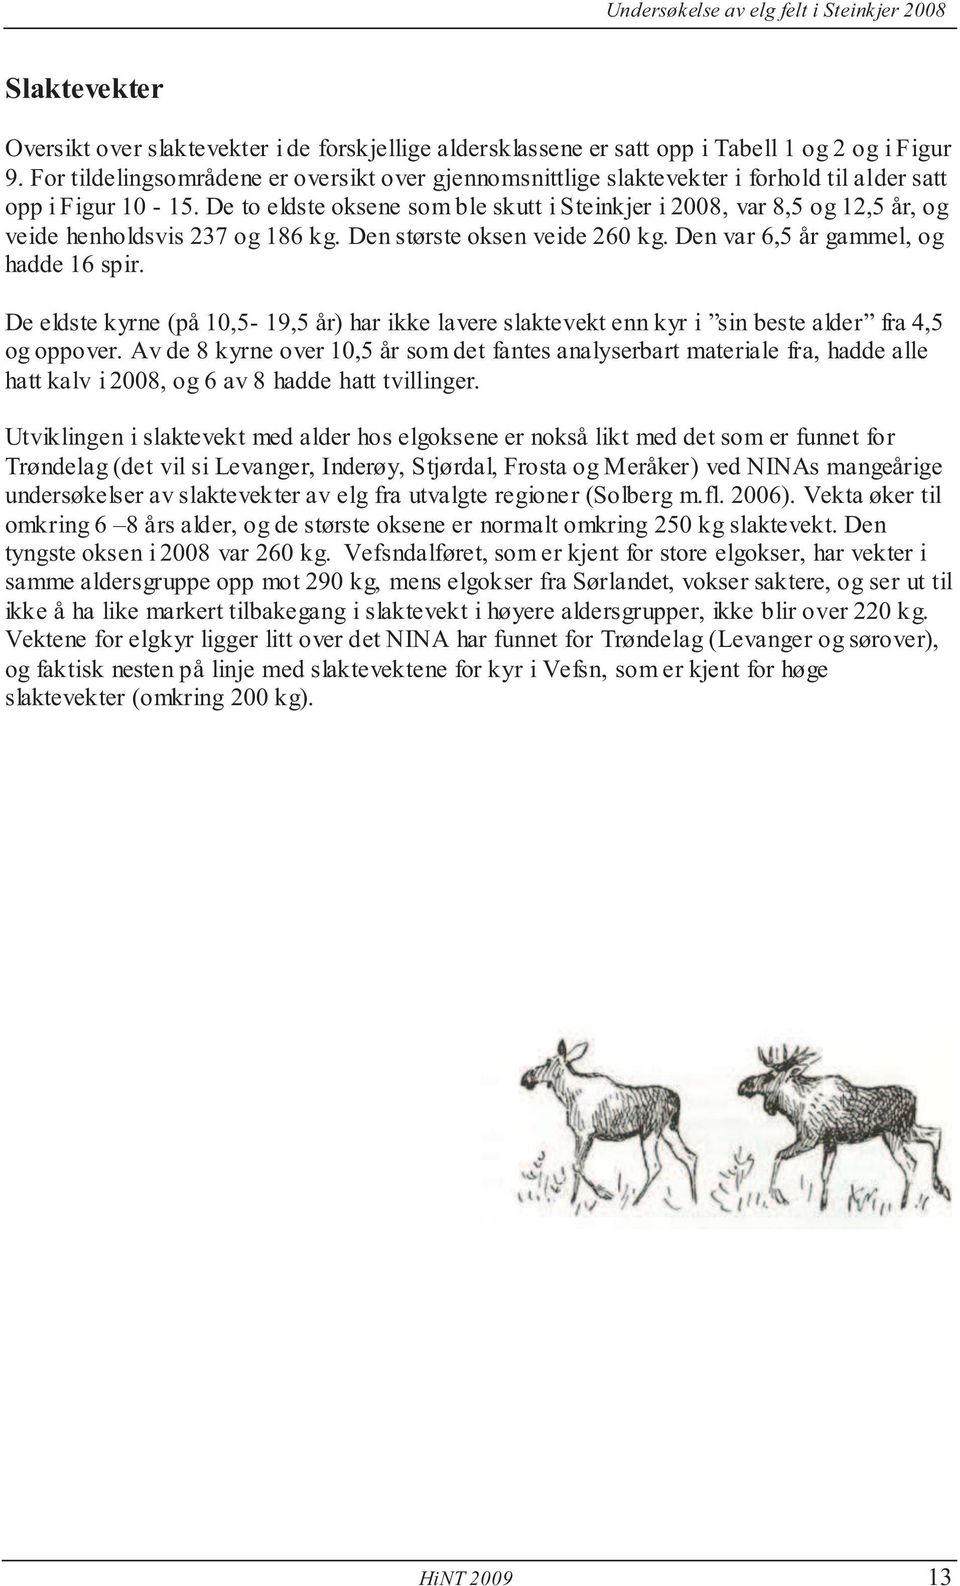 De to eldste oksene som ble skutt i Steinkjer i 2008, var 8,5 og 12,5 år, og veide henholdsvis 237 og 186 kg. Den største oksen veide 260 kg. Den var 6,5 år gammel, og hadde 16 spir.